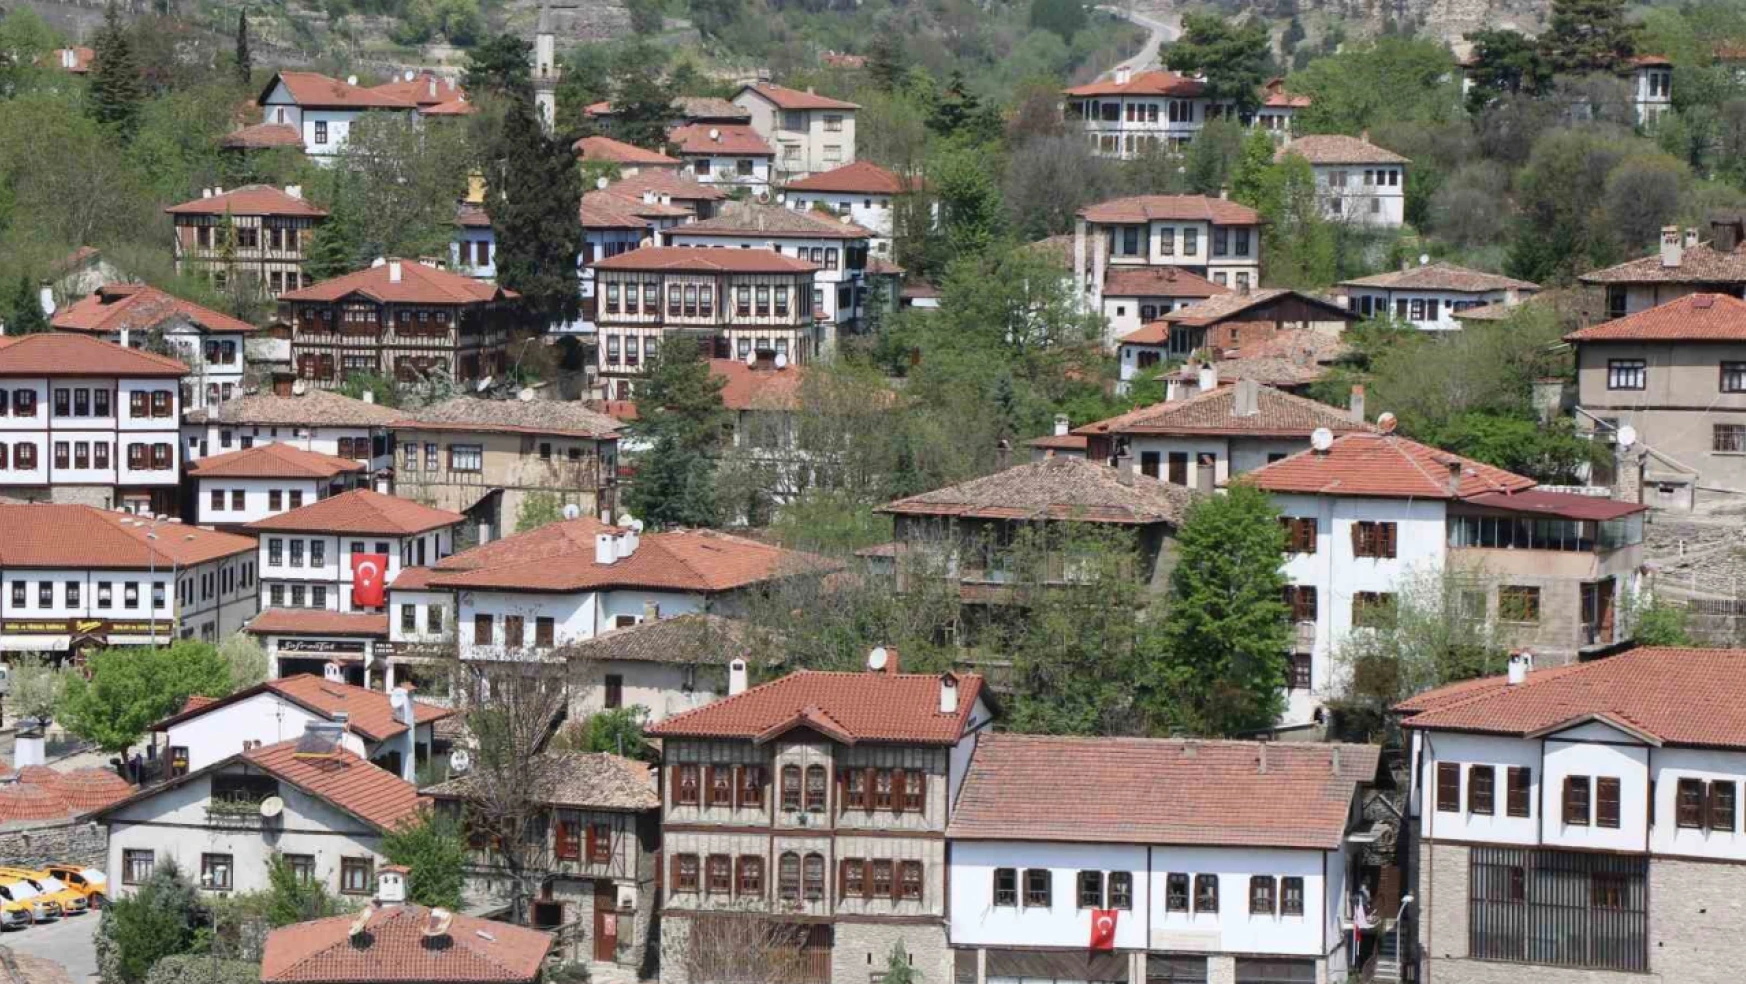 Osmanlı kenti Safranbolu Cittaslow'a dahil edildi